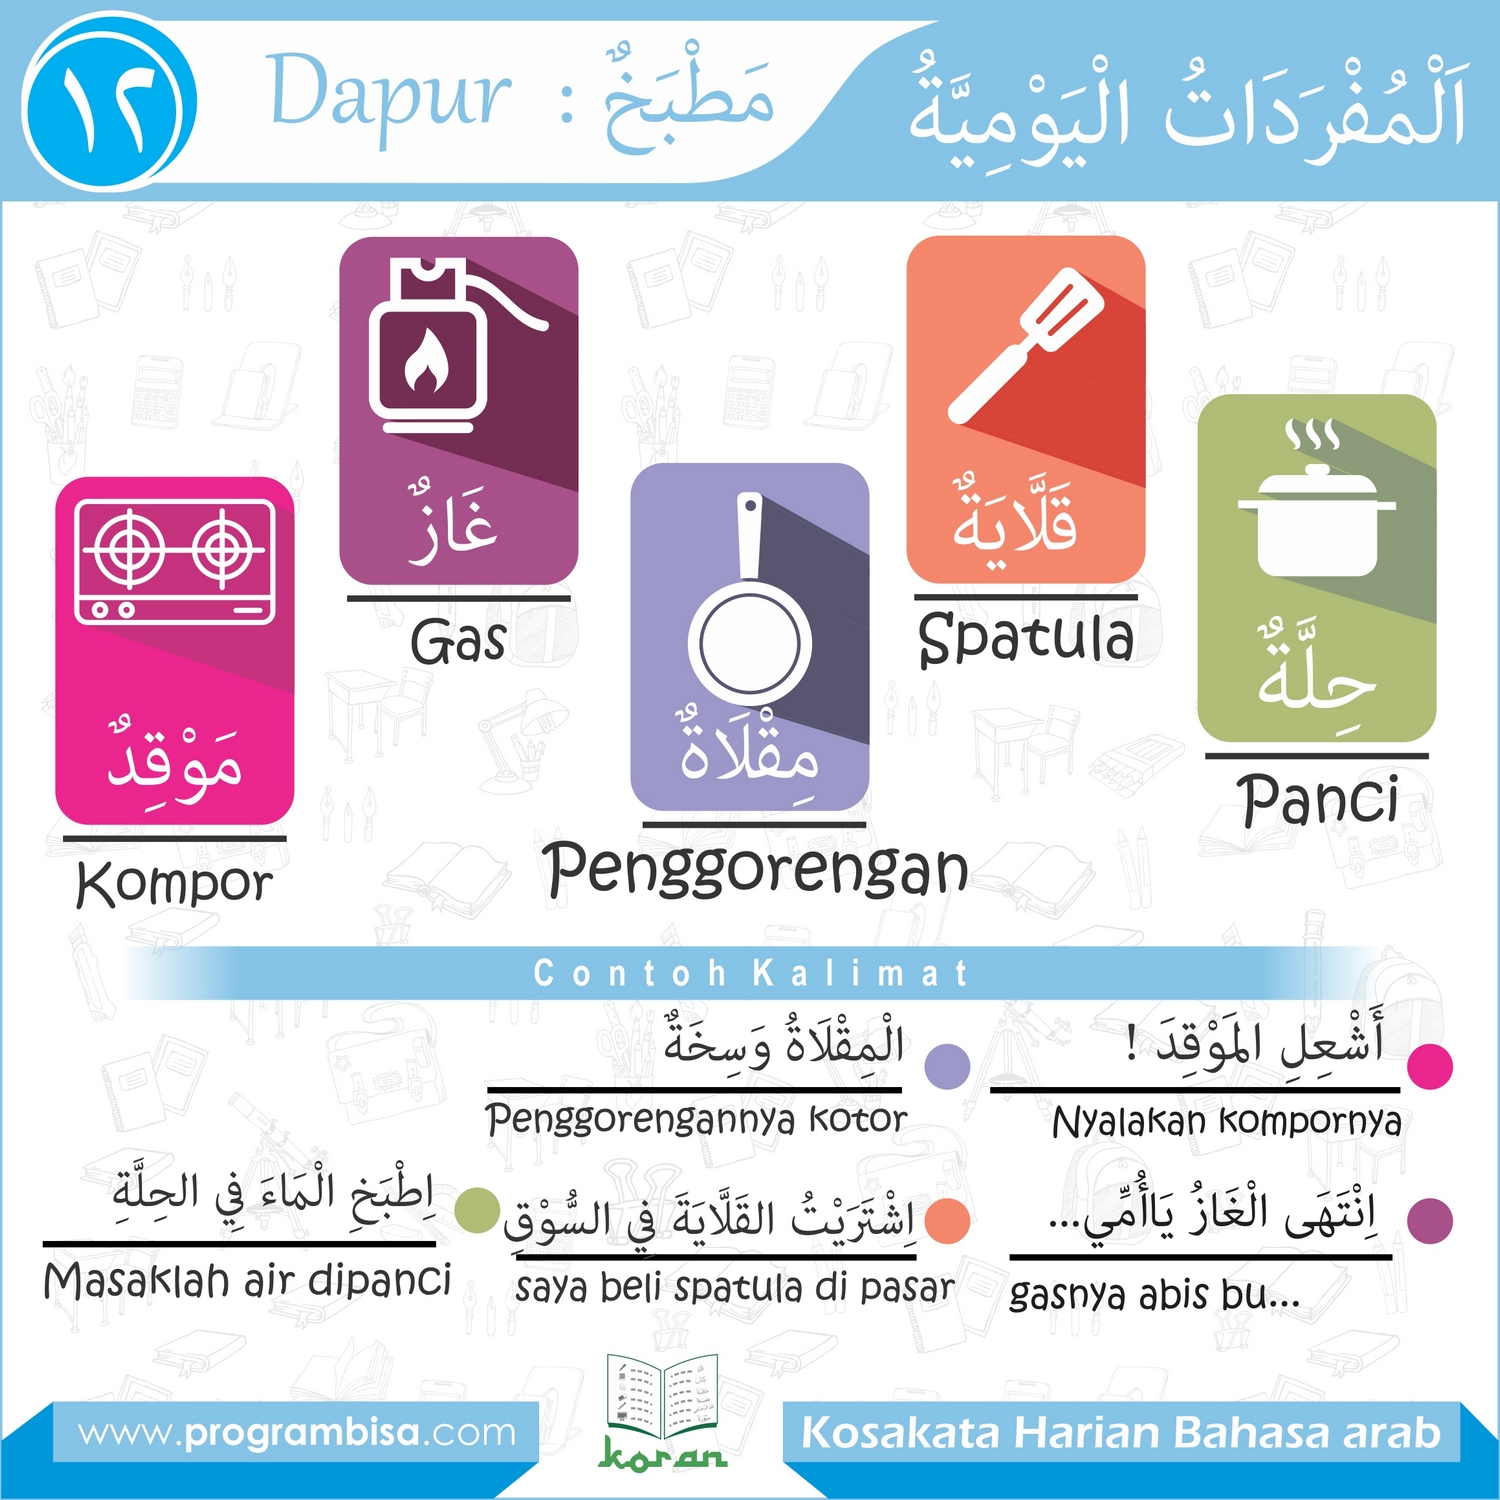 Kosakata Harian Bahasa Arab 011 alat kebersihan 